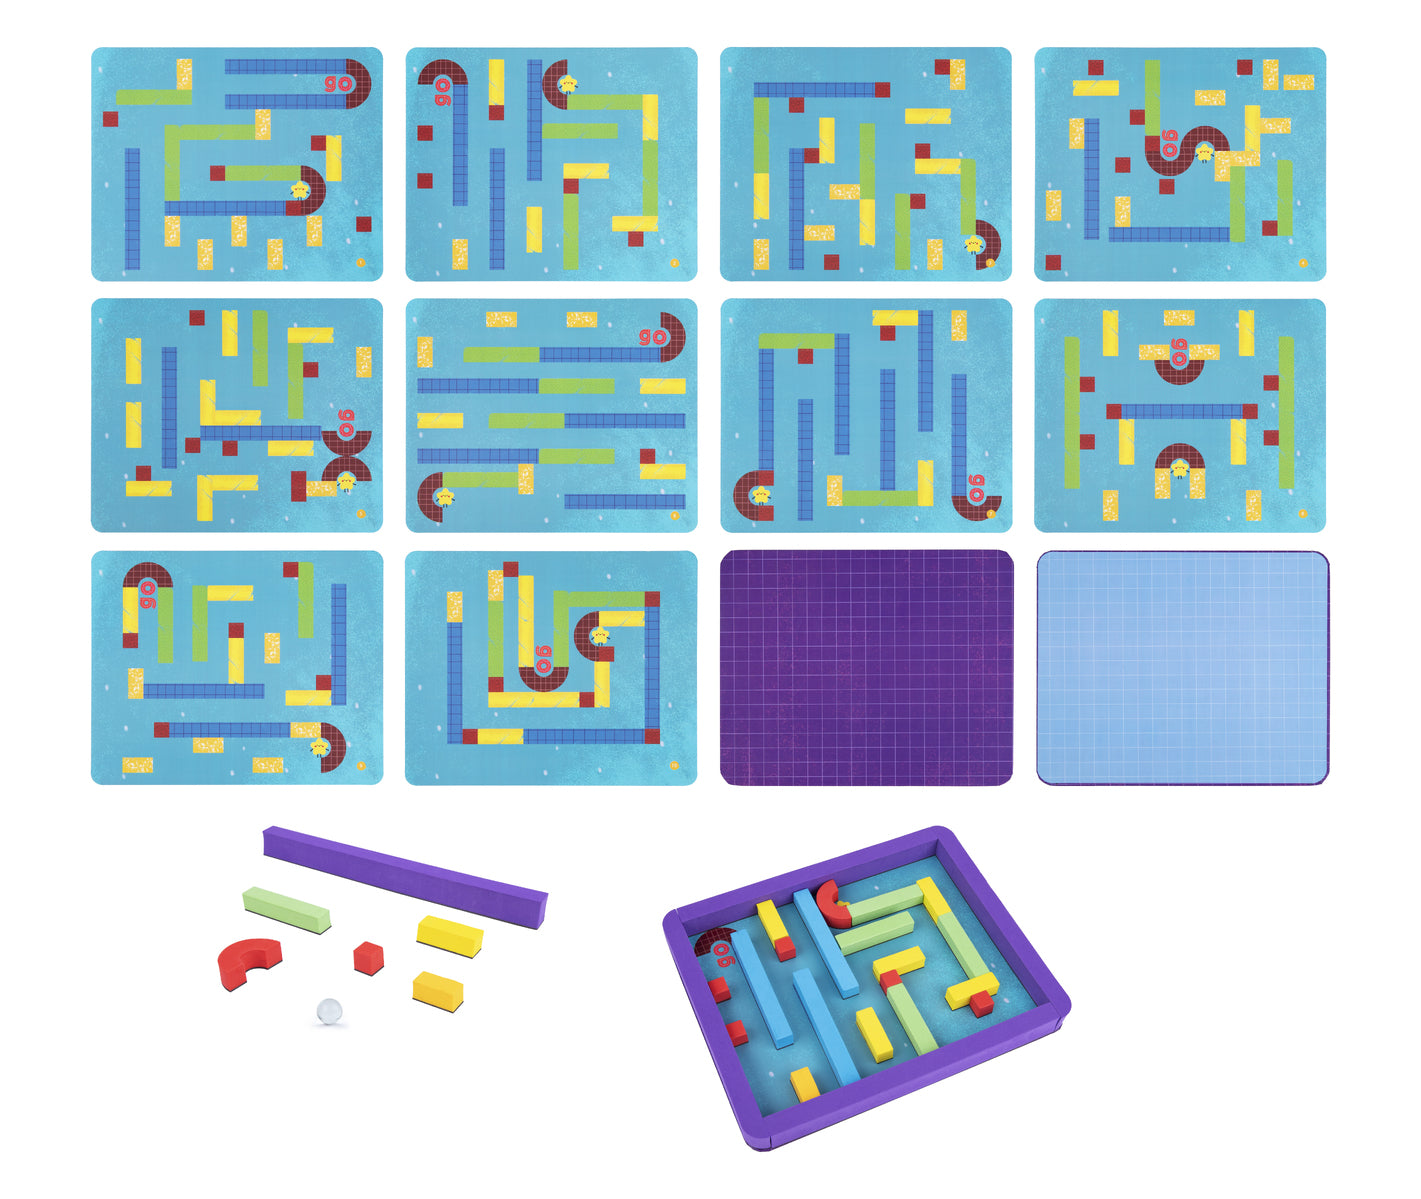 Tookyland Magnetic Maze Kit Puzzle Game